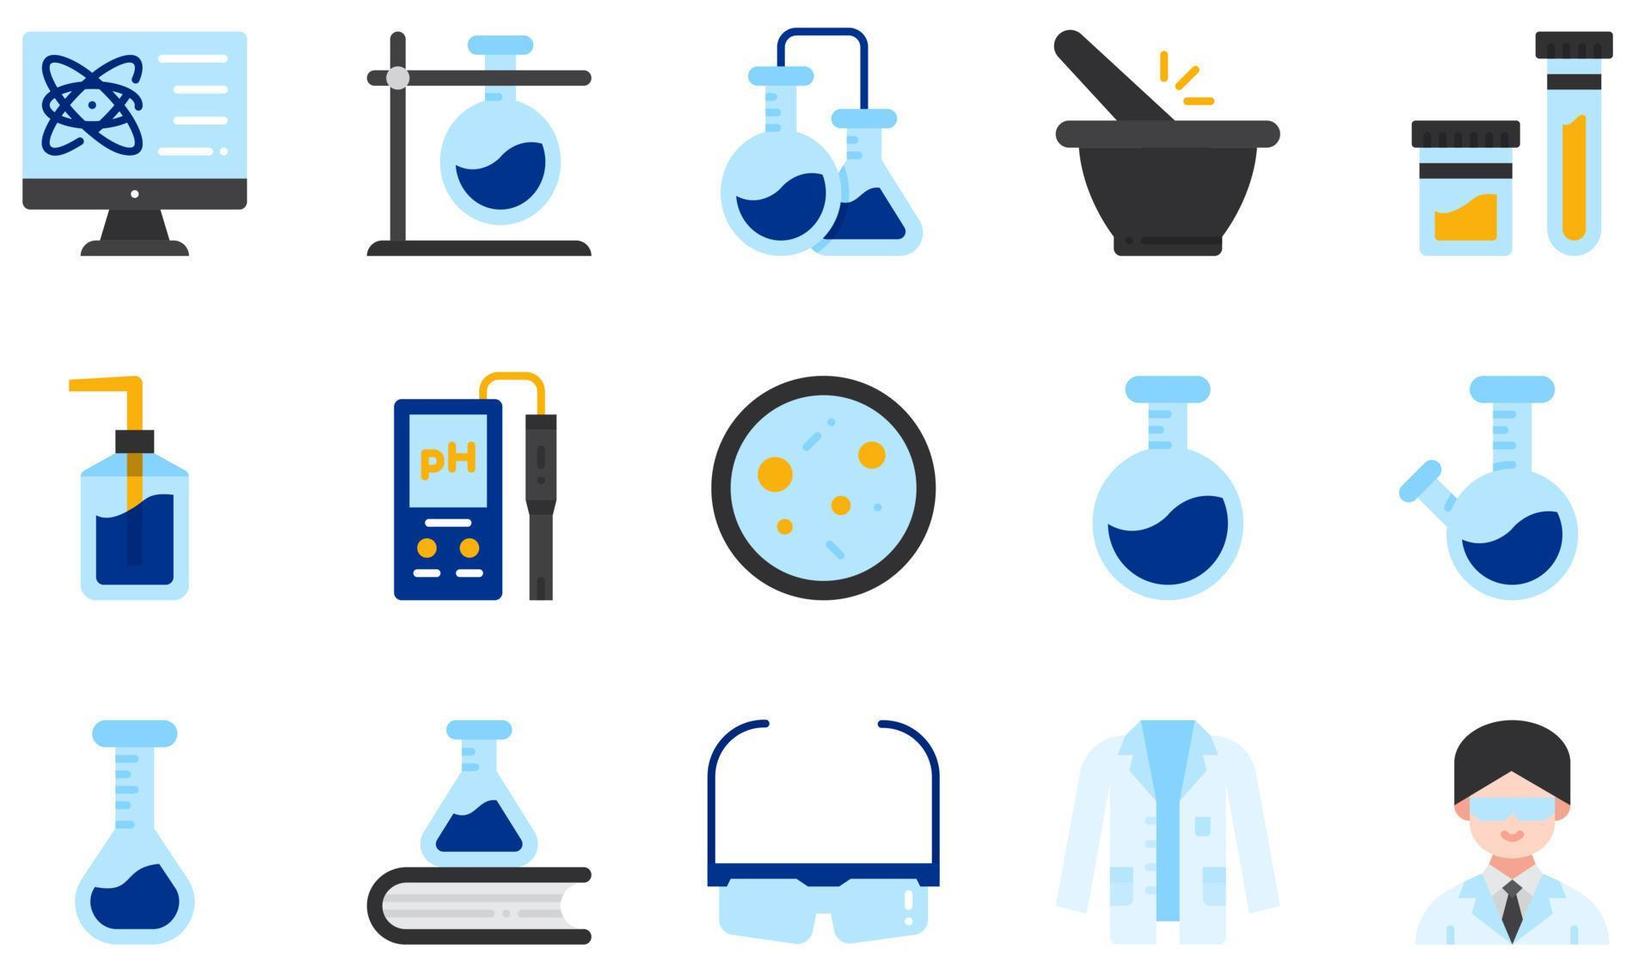 Reihe von Vektorsymbolen im Zusammenhang mit dem Chemielabor. Enthält Symbole wie Reagenzglas, Chemie, Urinprobe, pH-Meter, Kolben, Laborkittel und mehr. vektor